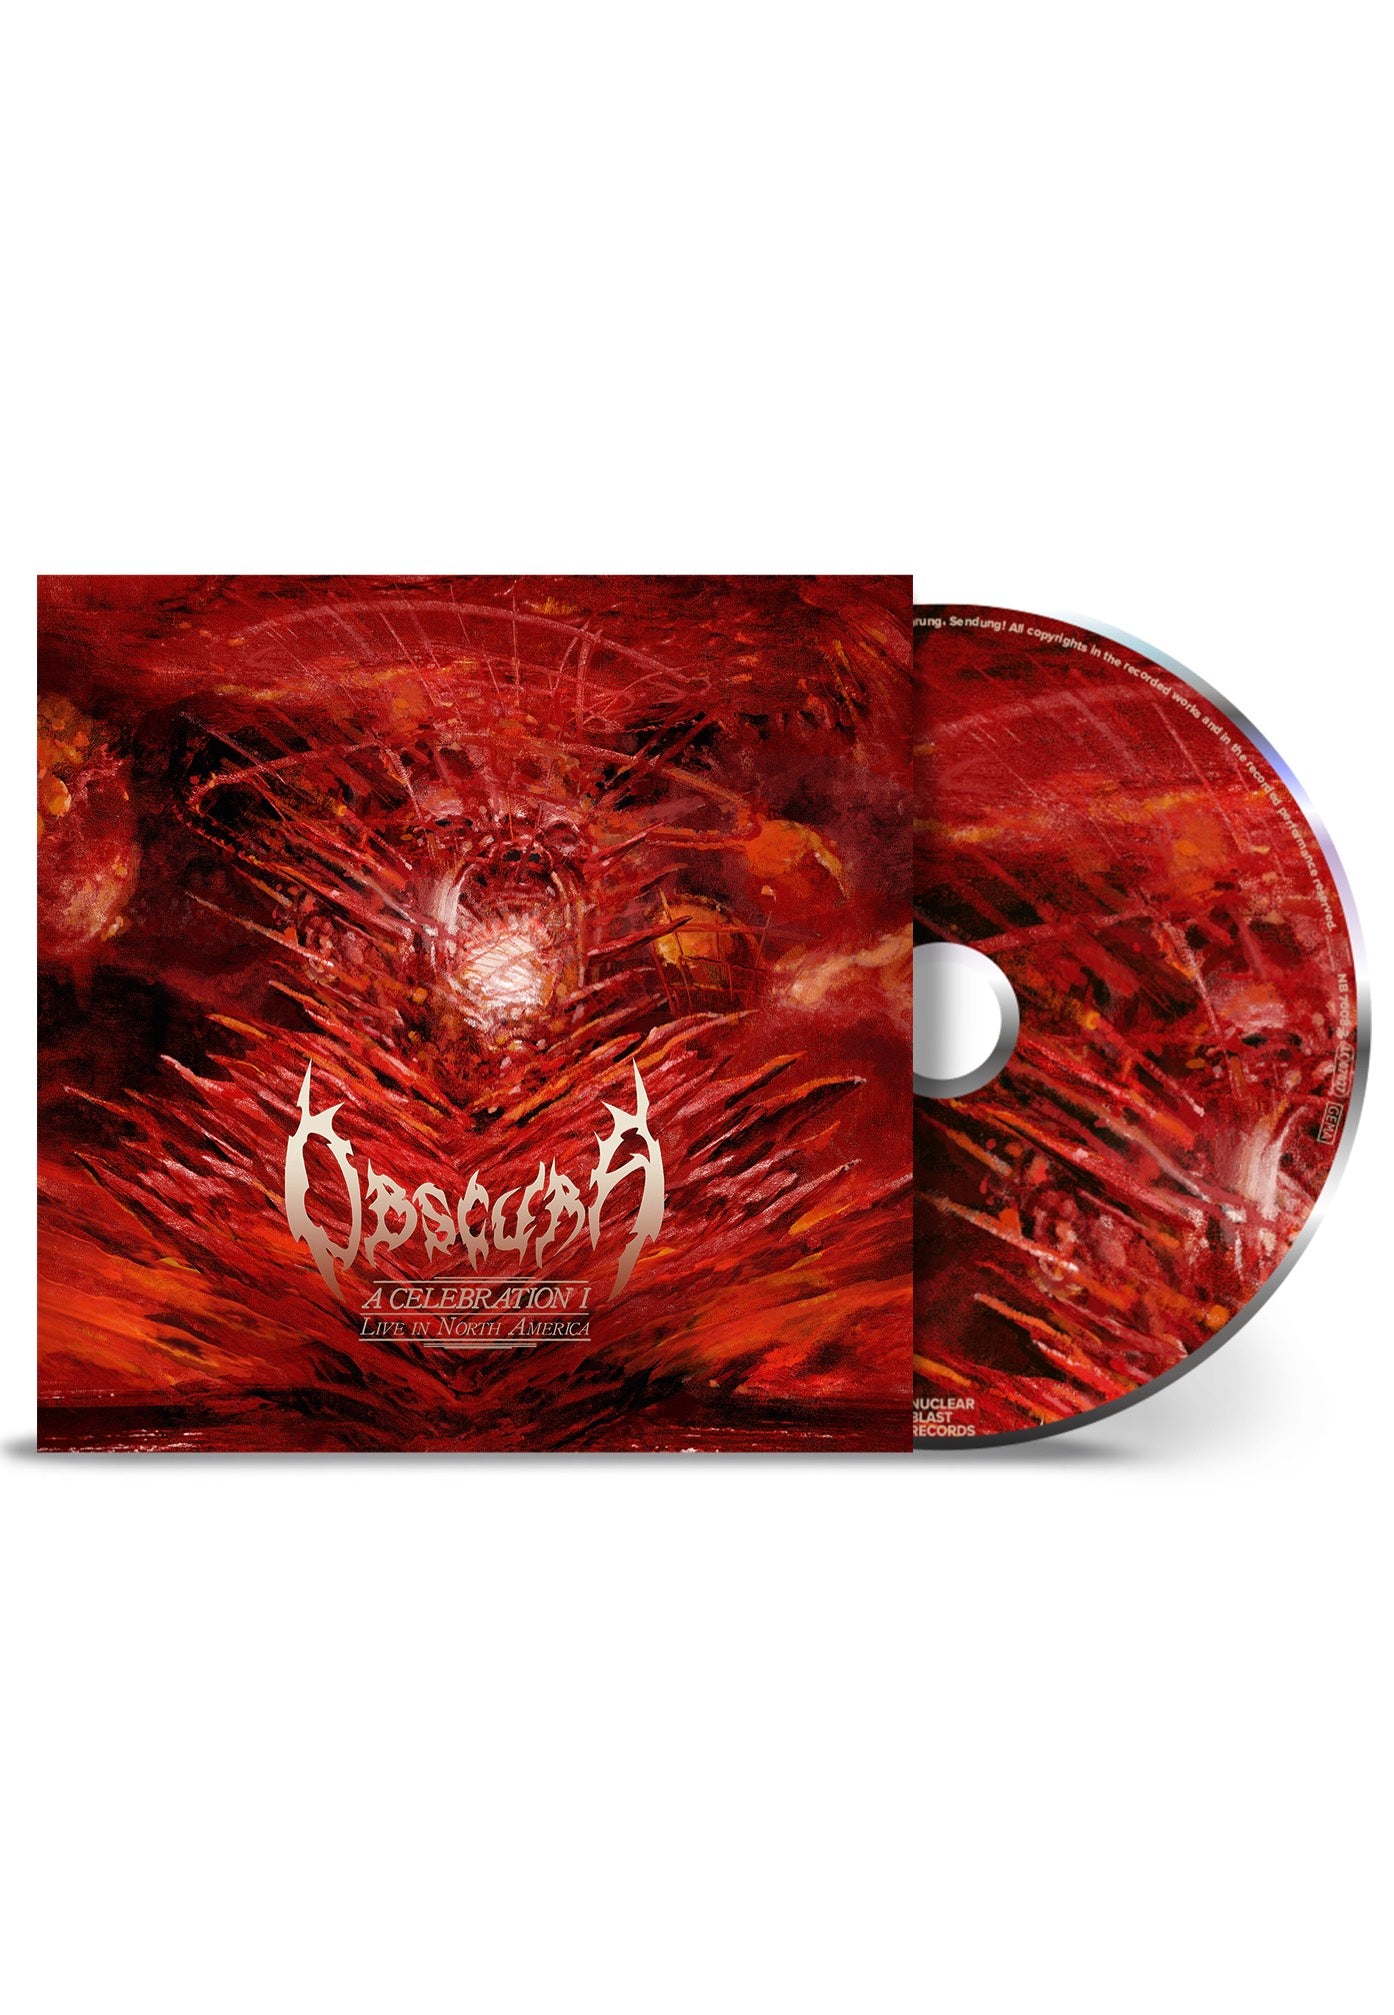 Obscura - A Celebration I (Live In North America) - CD